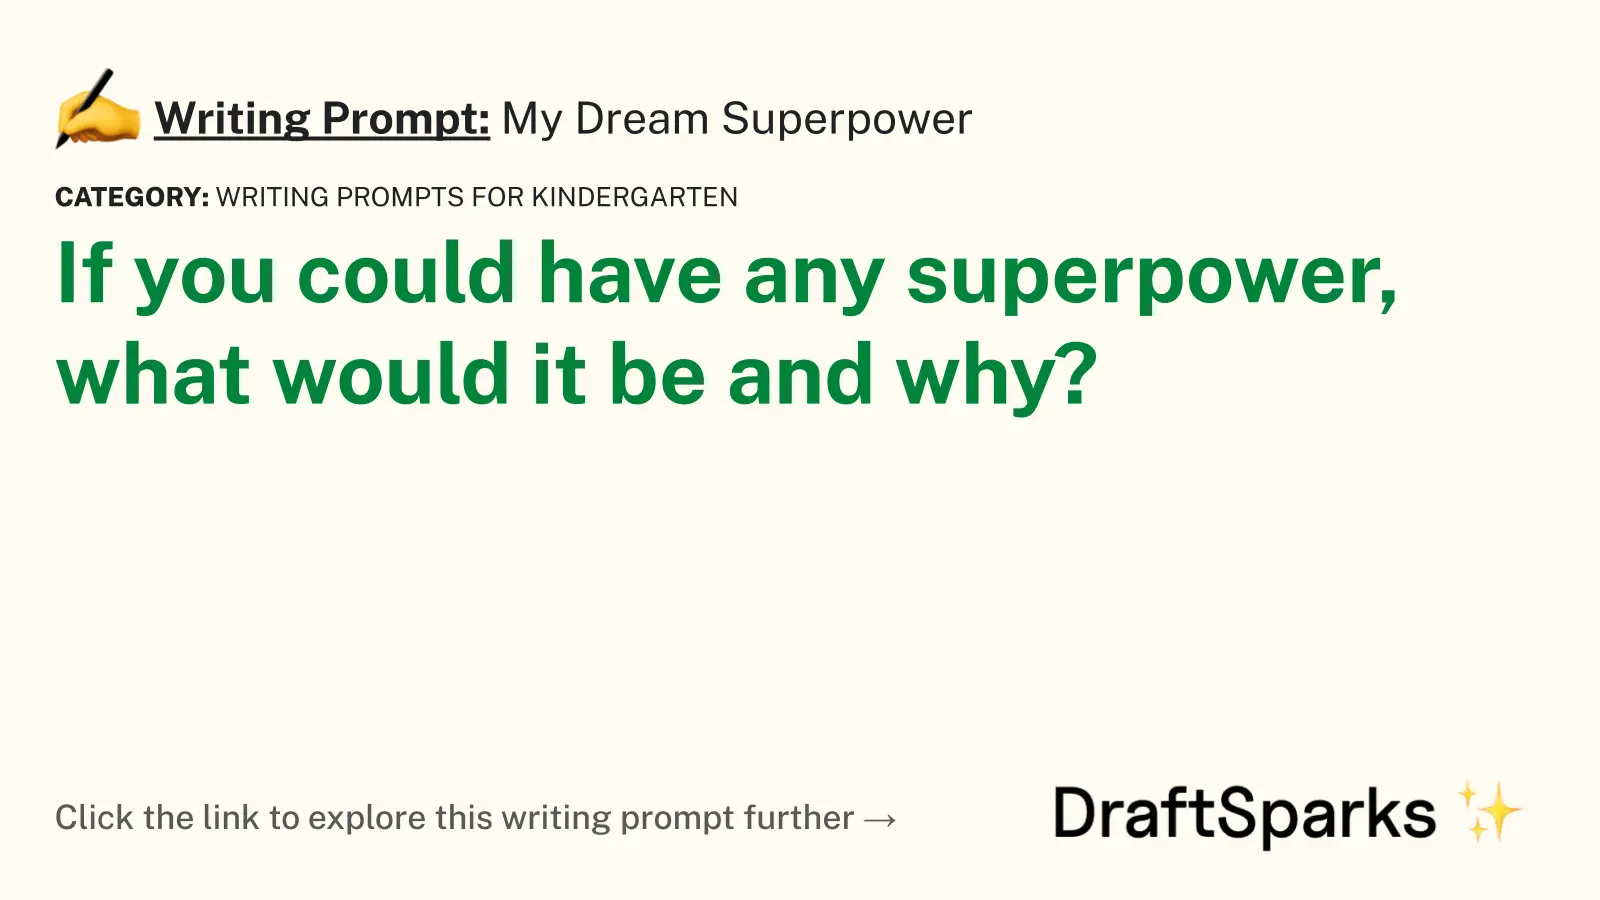 My Dream Superpower